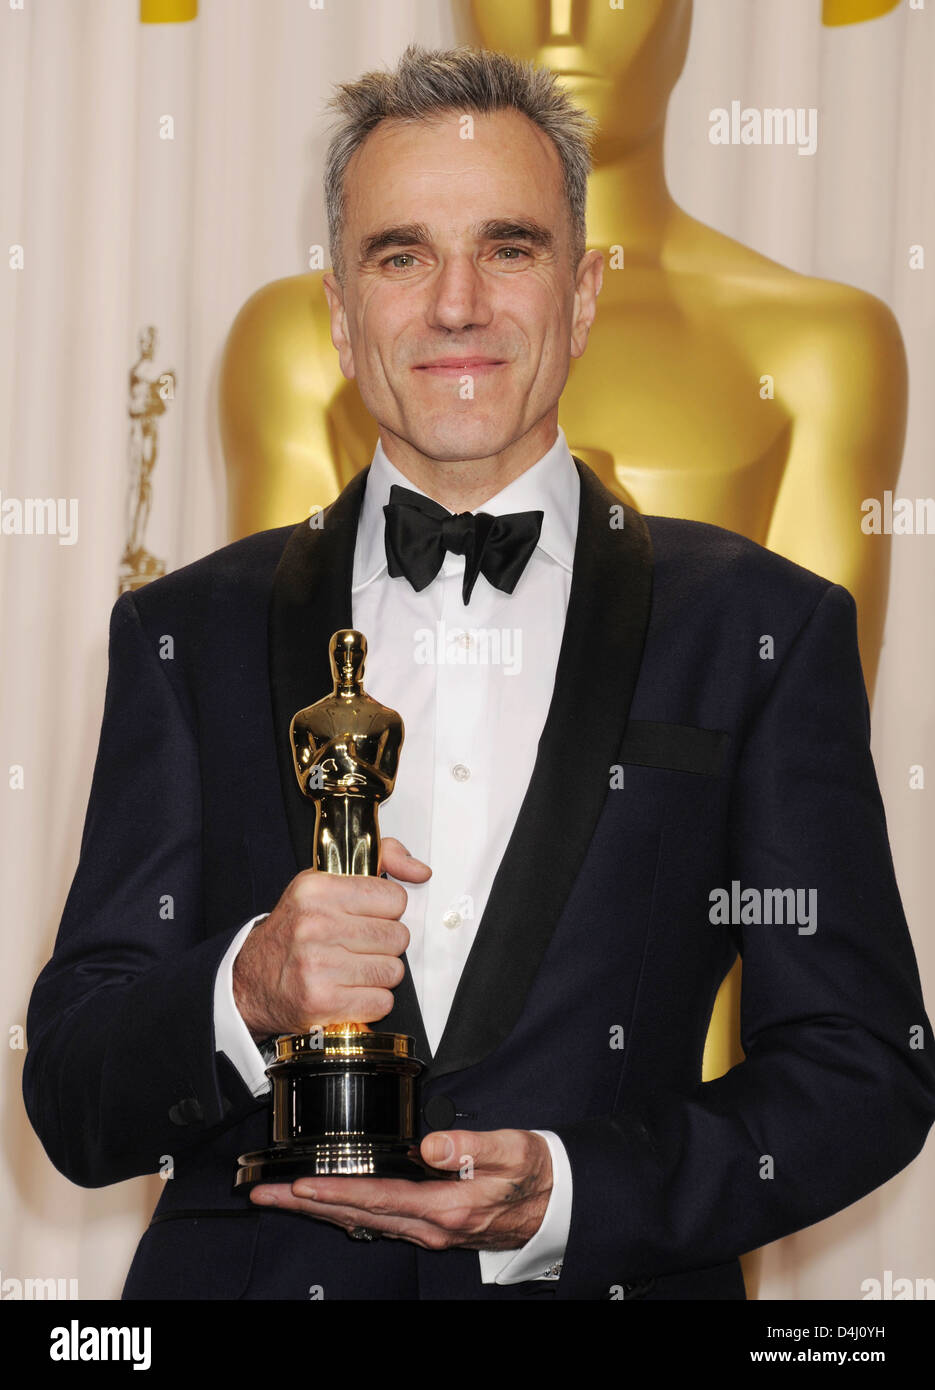 DANIEL DAY-LEWIS Angloirlandesa actor de cine con su Oscar por Lincoln premiado en el 85º Premios de la Academia en Los Angeles 2013 Foto de stock